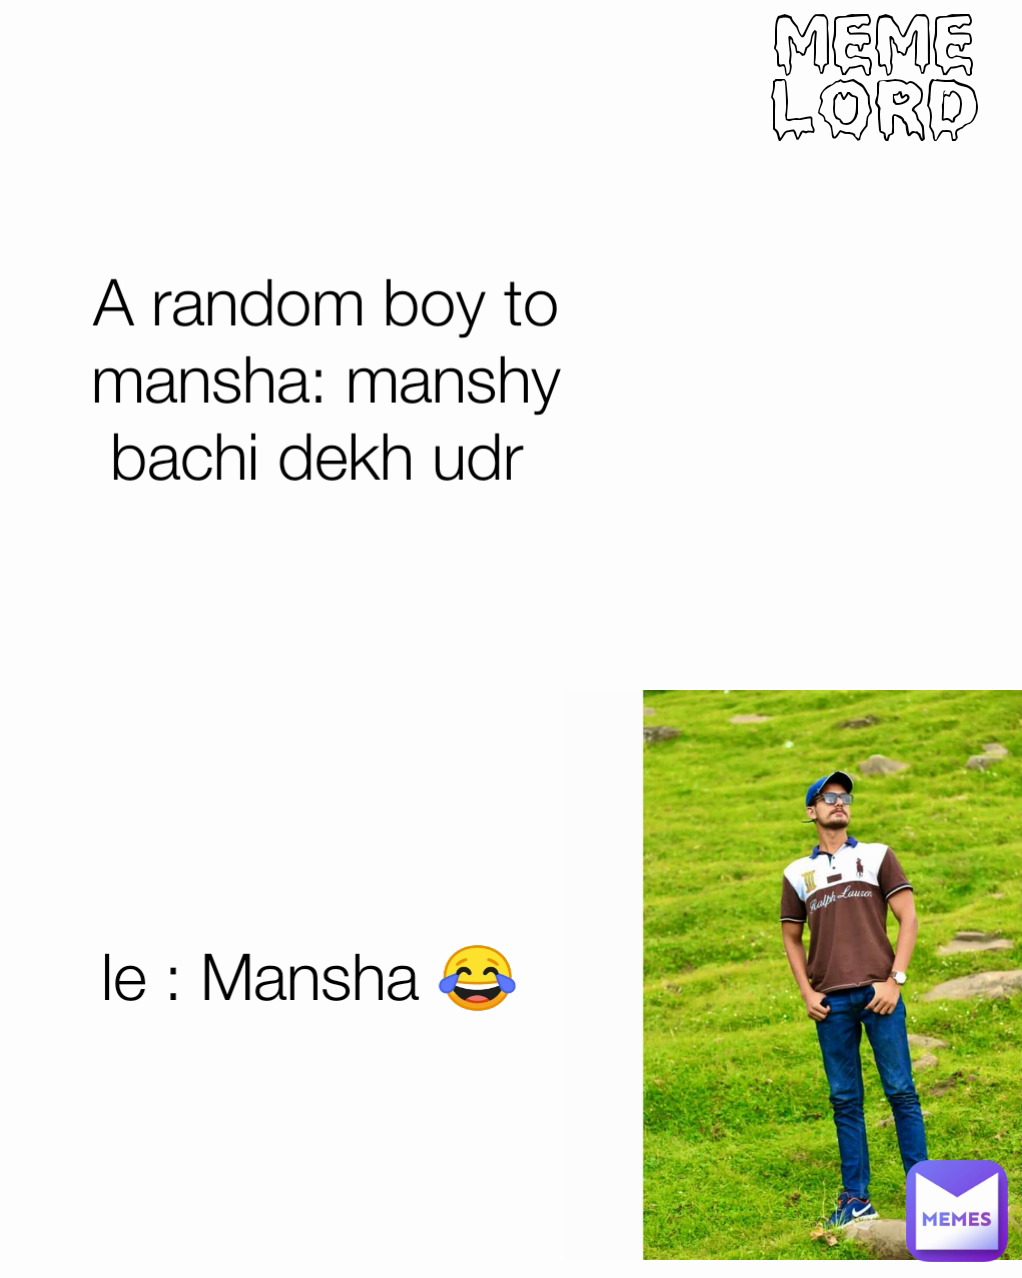 meme lord le : Mansha 😂 A random boy to mansha: manshy bachi dekh udr 